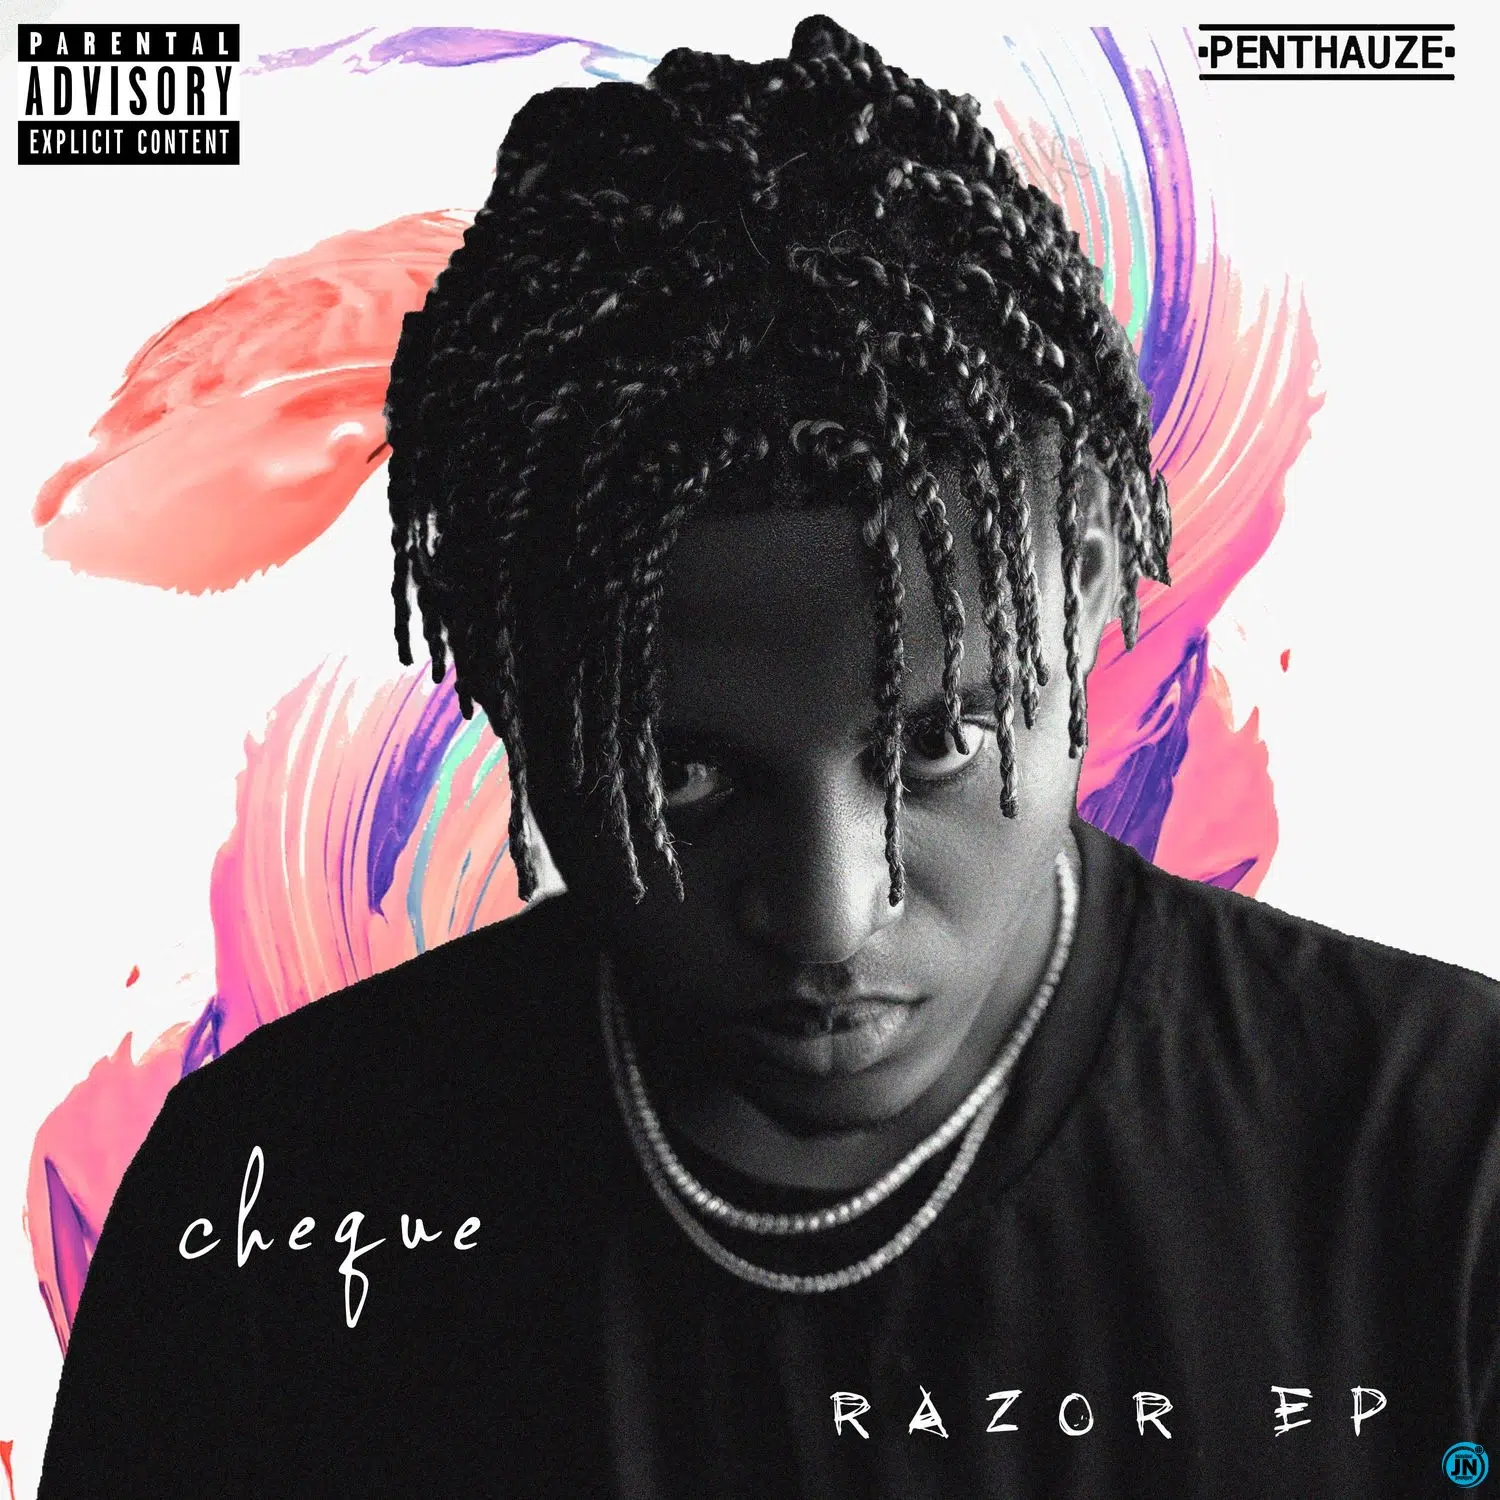 DOWNLOAD ALBUM: Cheque – “Razor EP” | Full Album